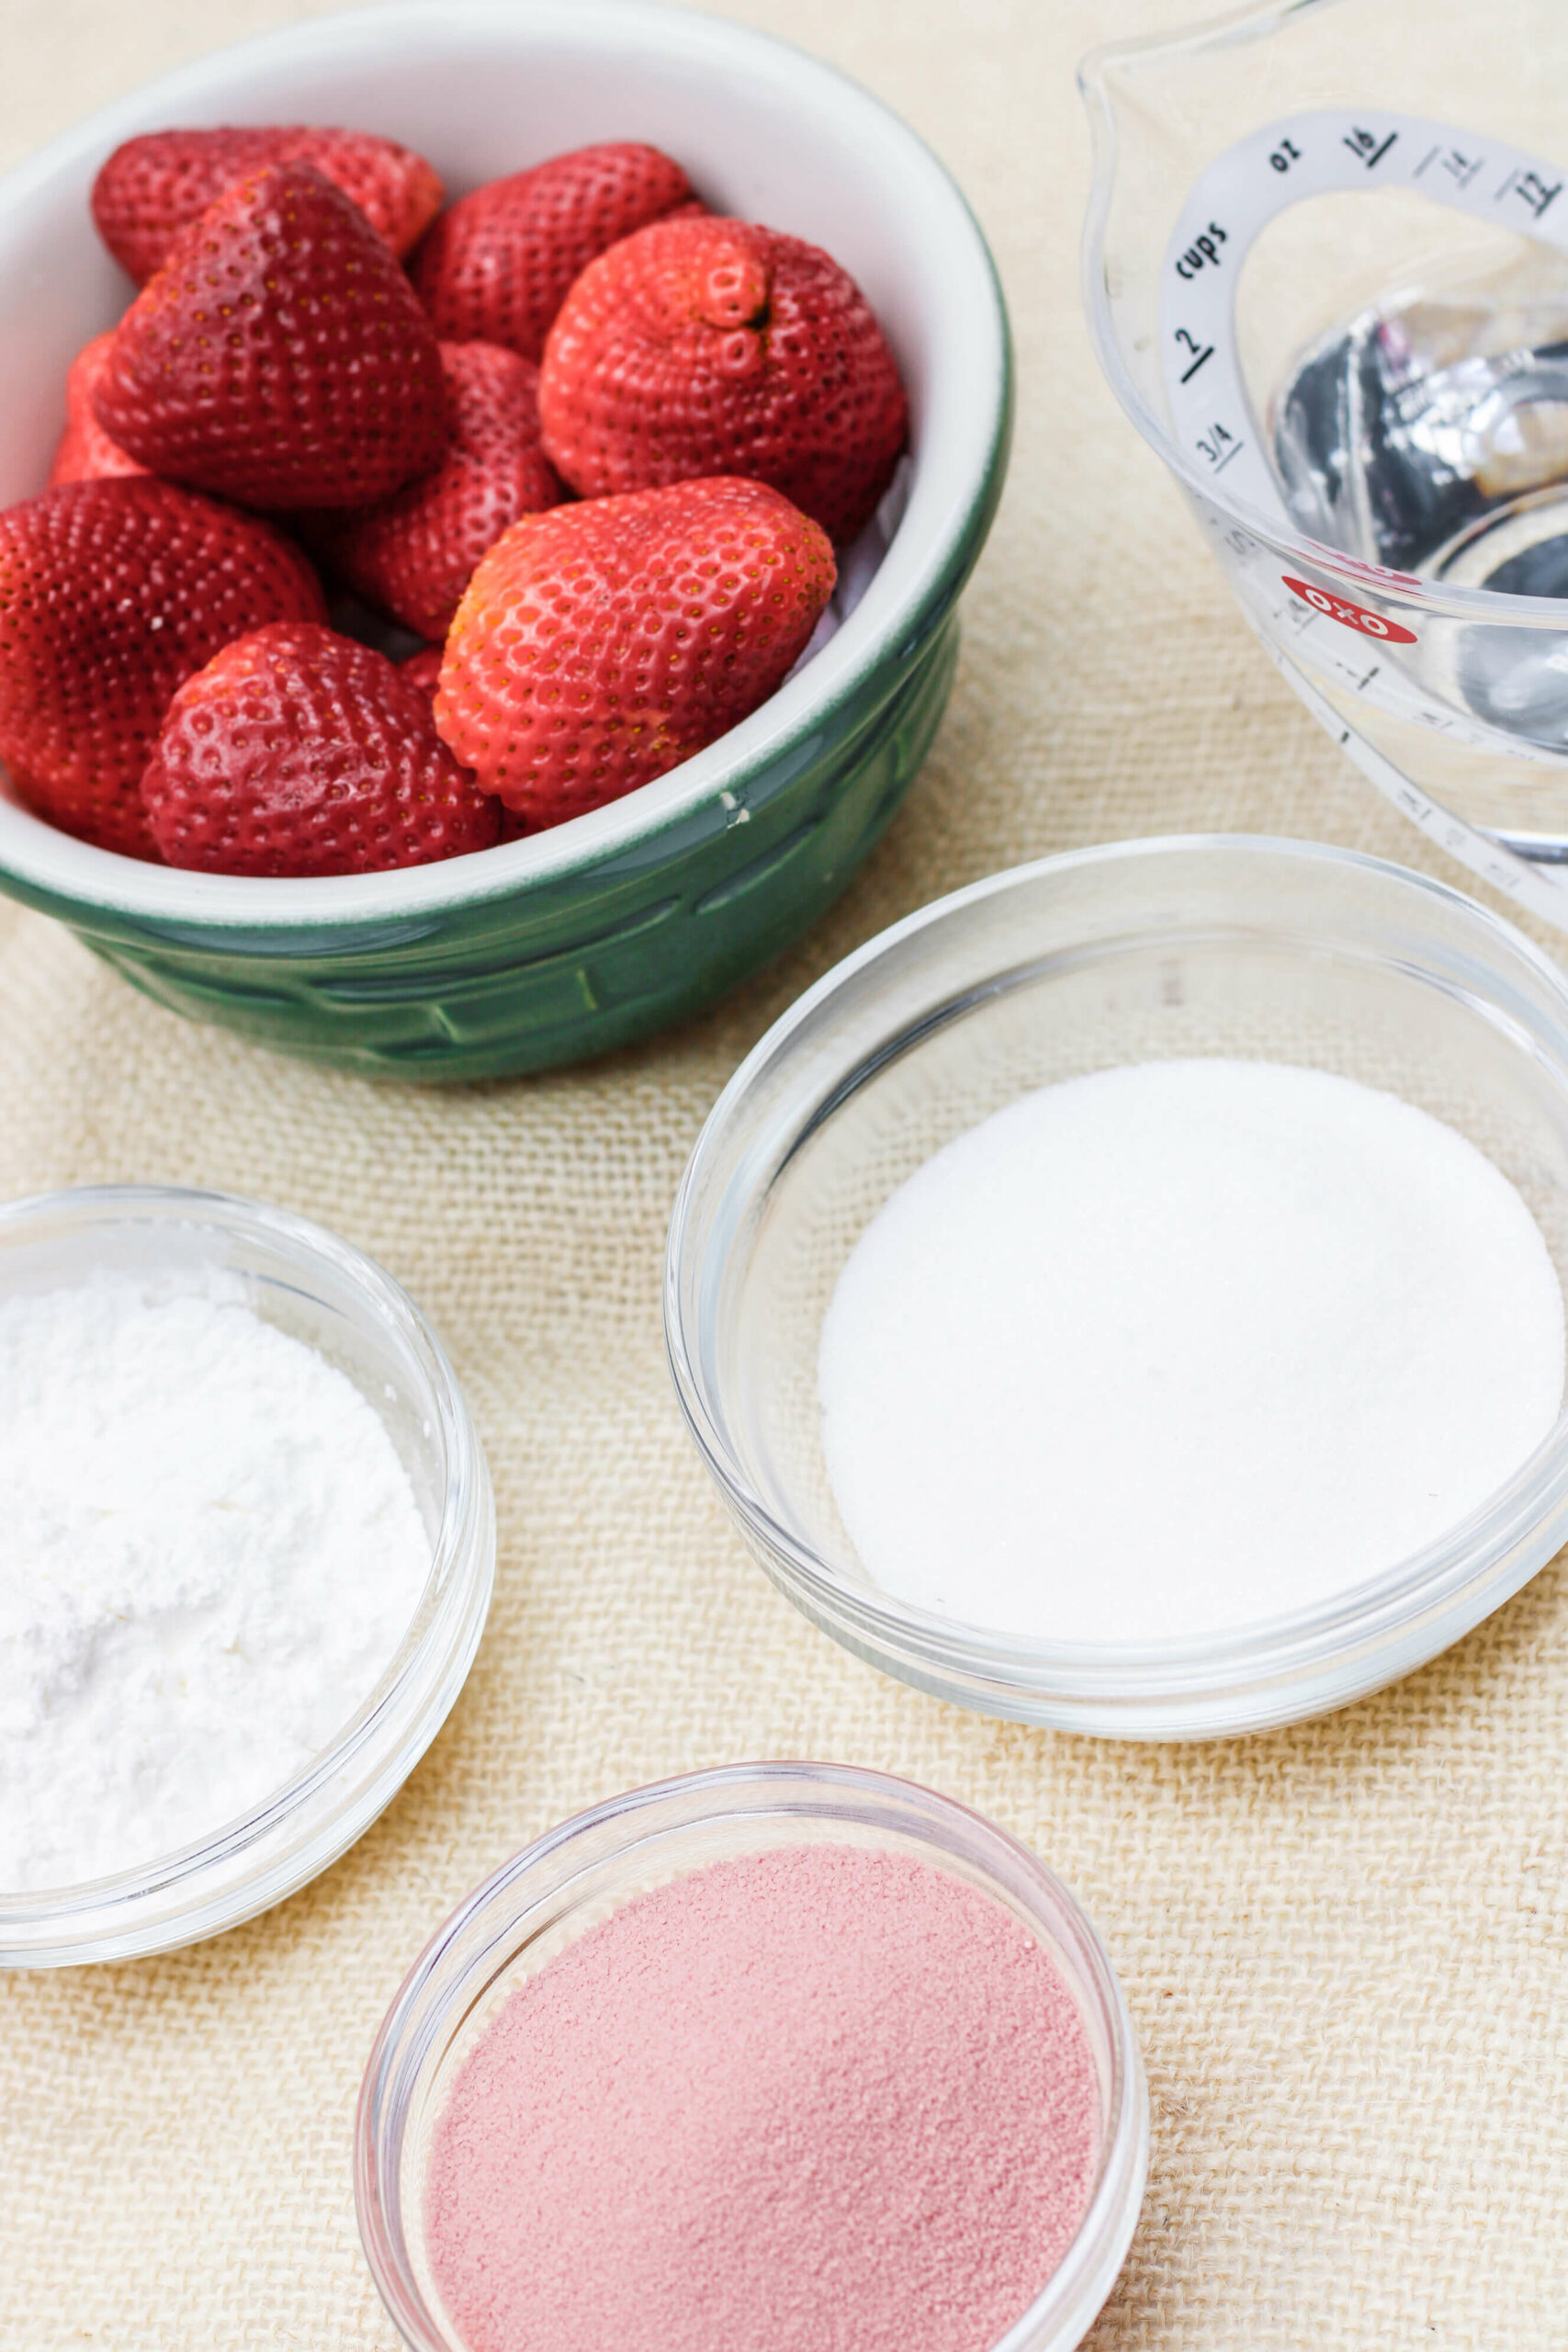 Strawberries, jello mix  and pie ingredients.